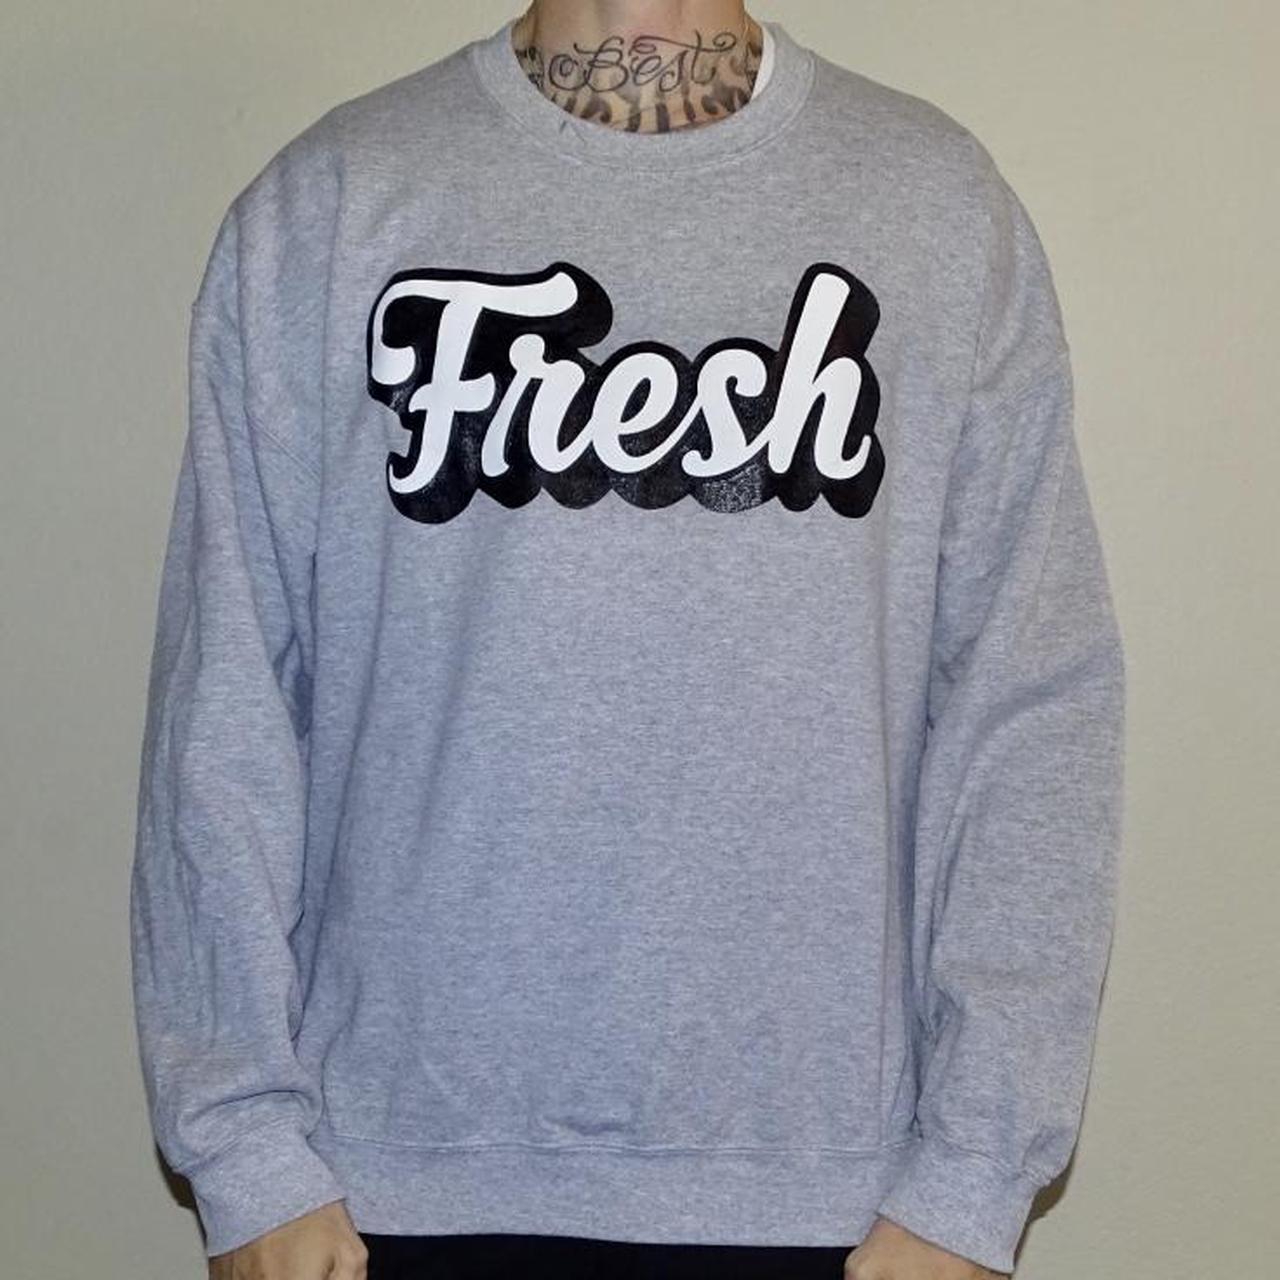 Product Image 1 - Fresh Crewneck sweatshirt. Free shipping.

Size